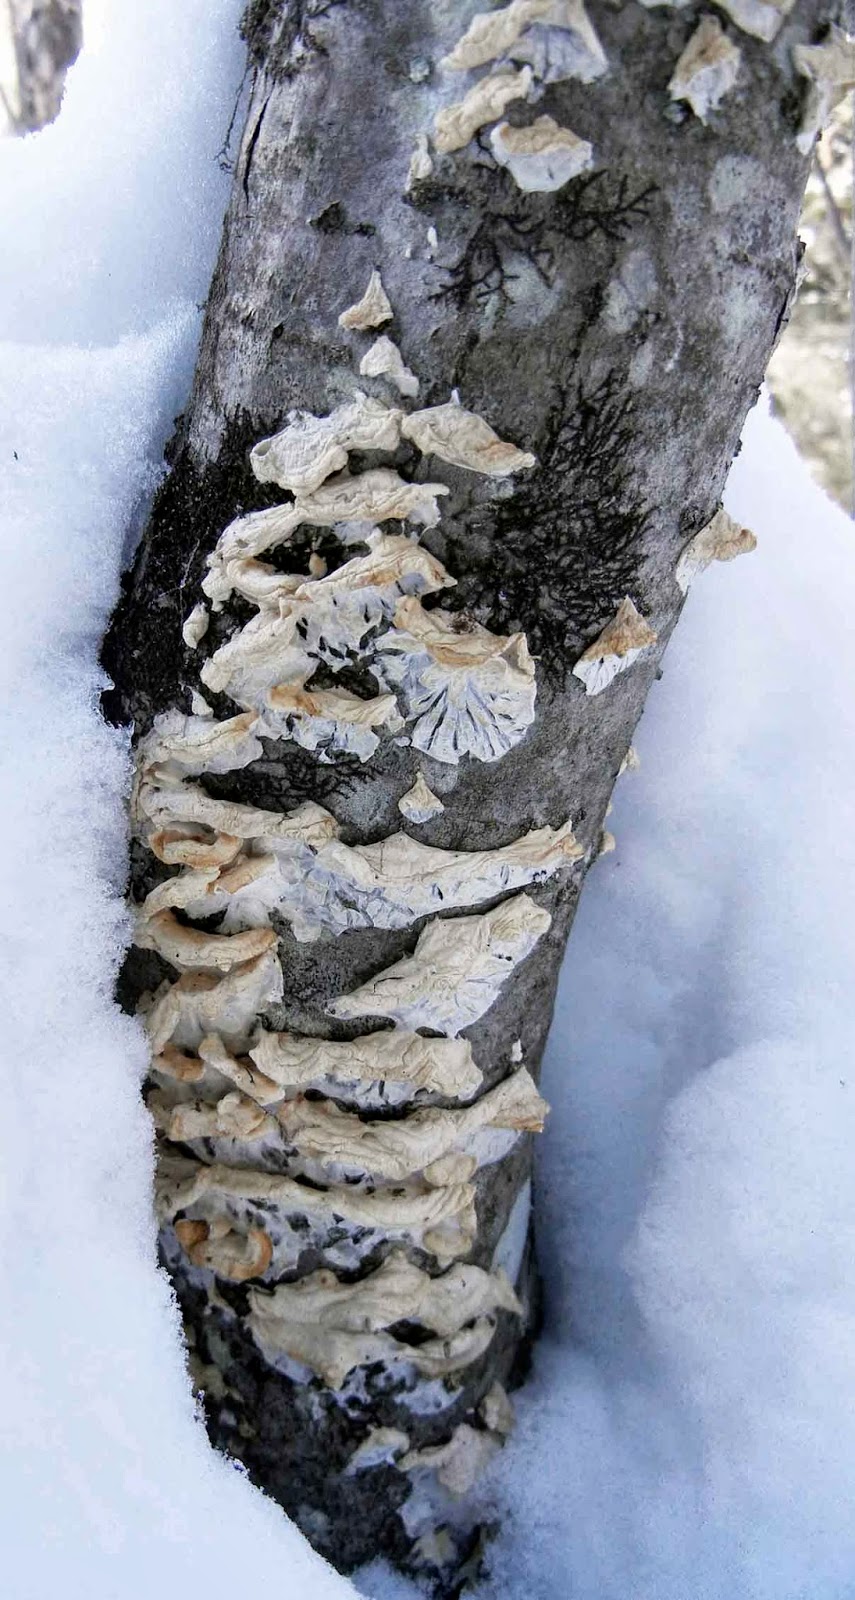 Plicatura nivea looks unimpressive in the winter